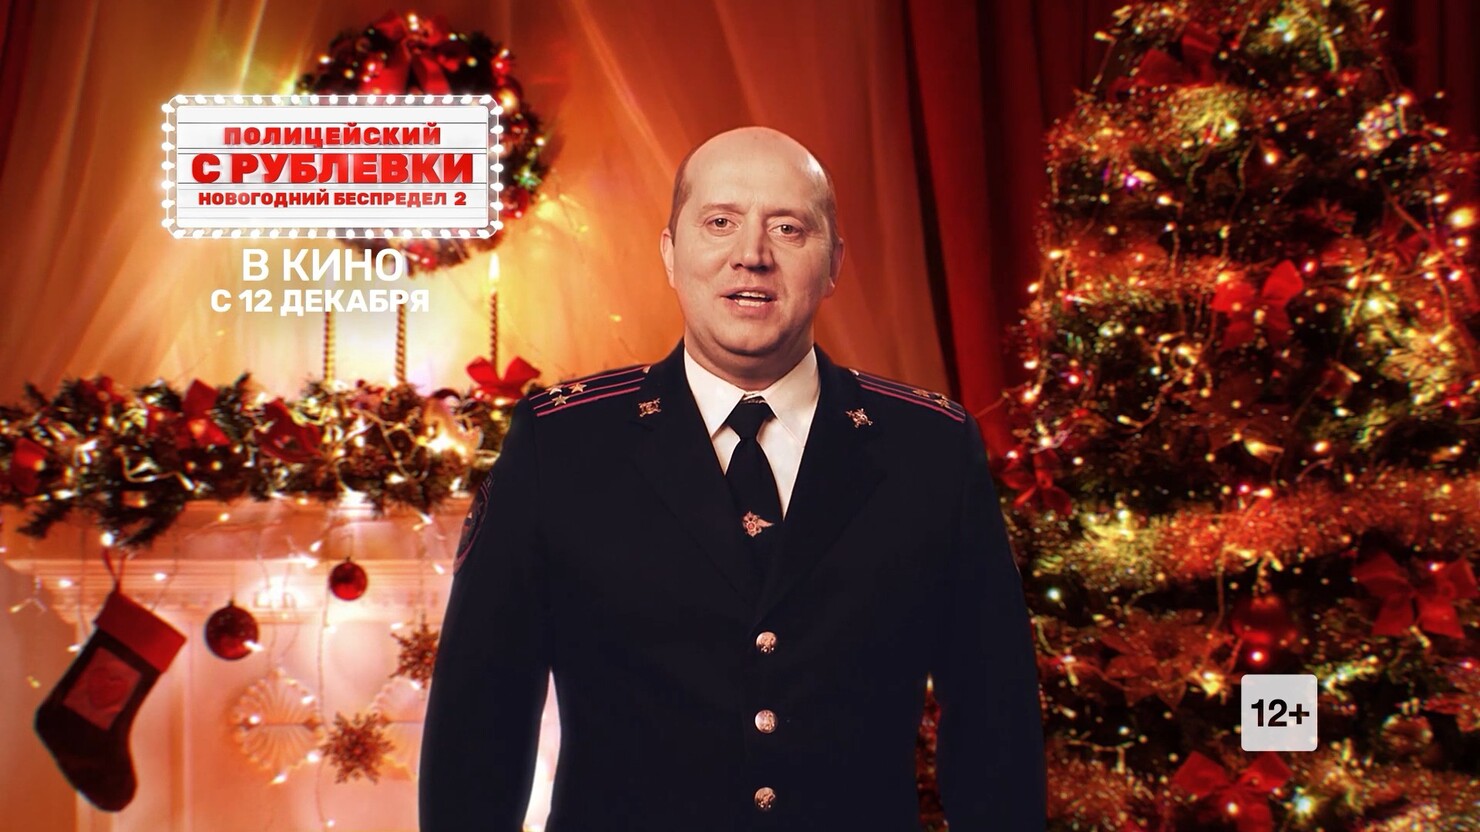 Полицейский С Рублевки Новогодний Беспредел Поздравления